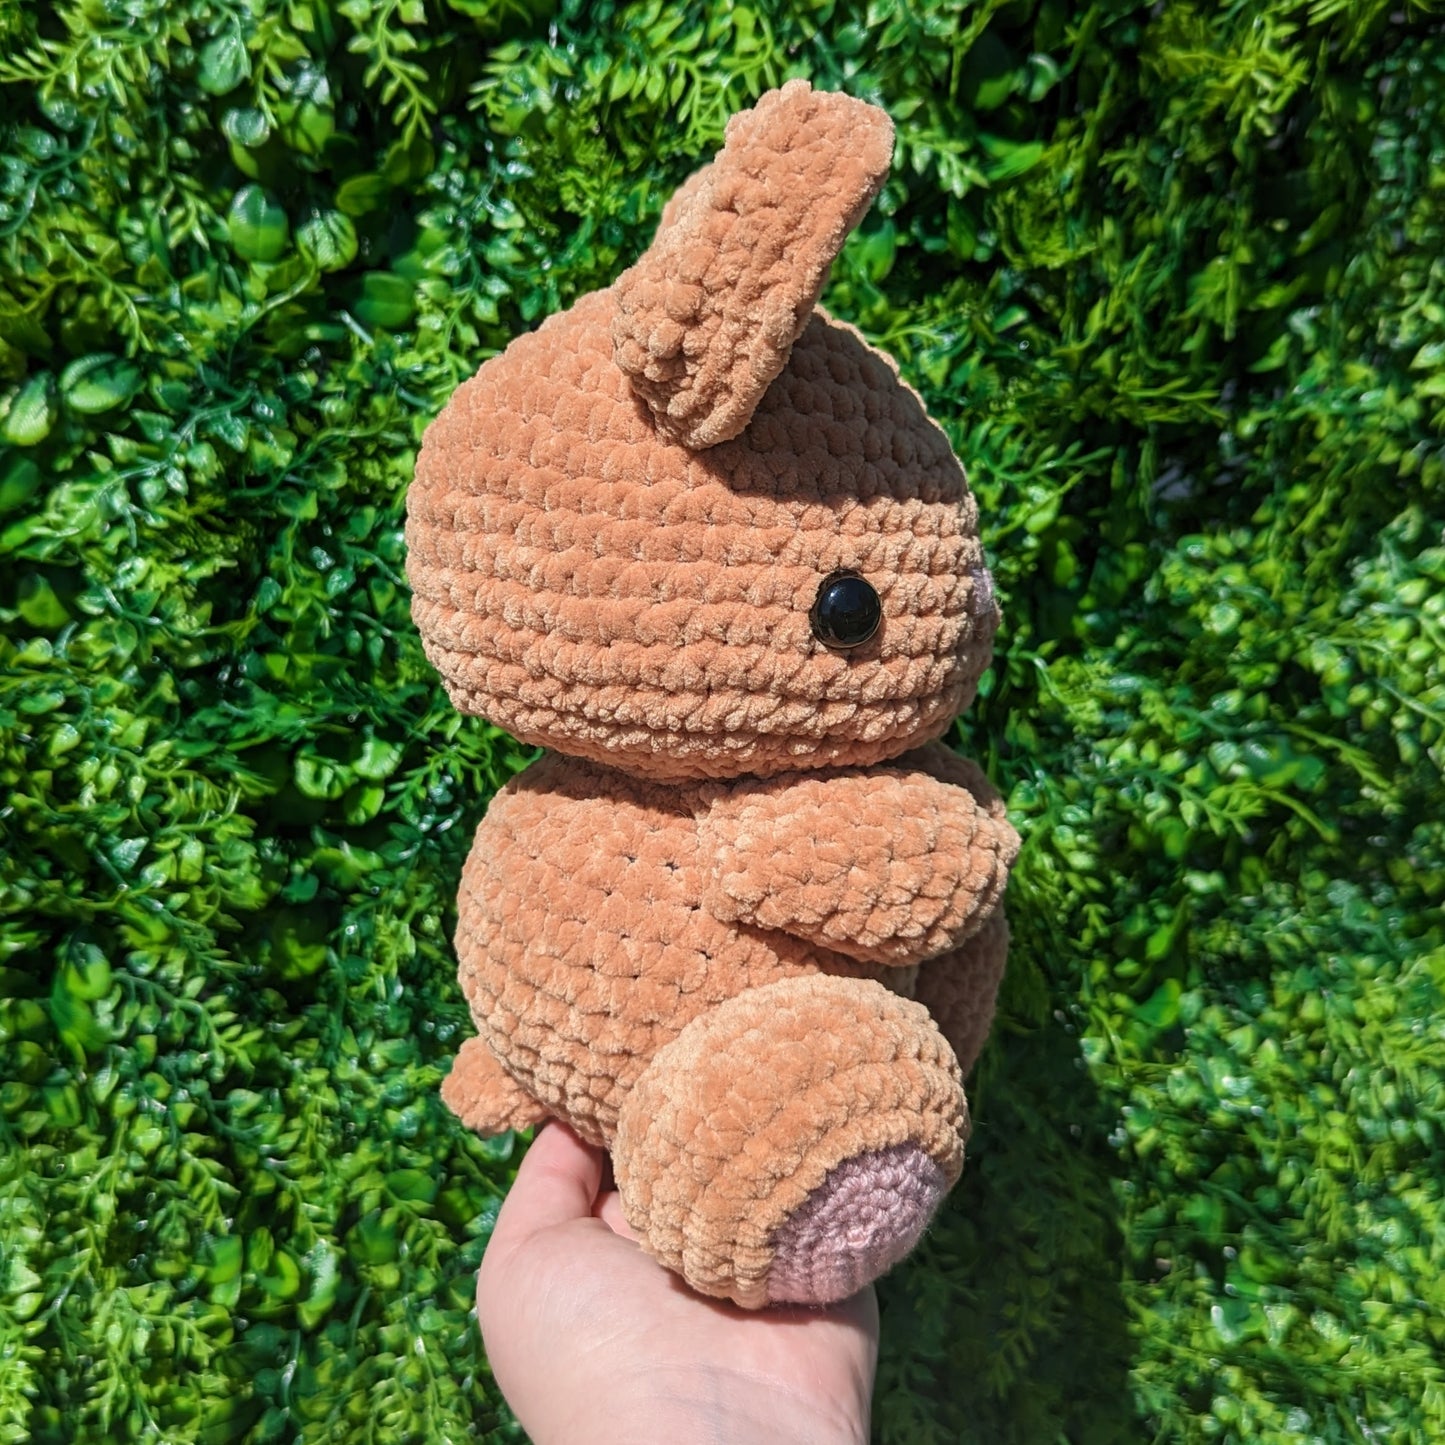 Sitting Honey Bunny Crochet Plushie